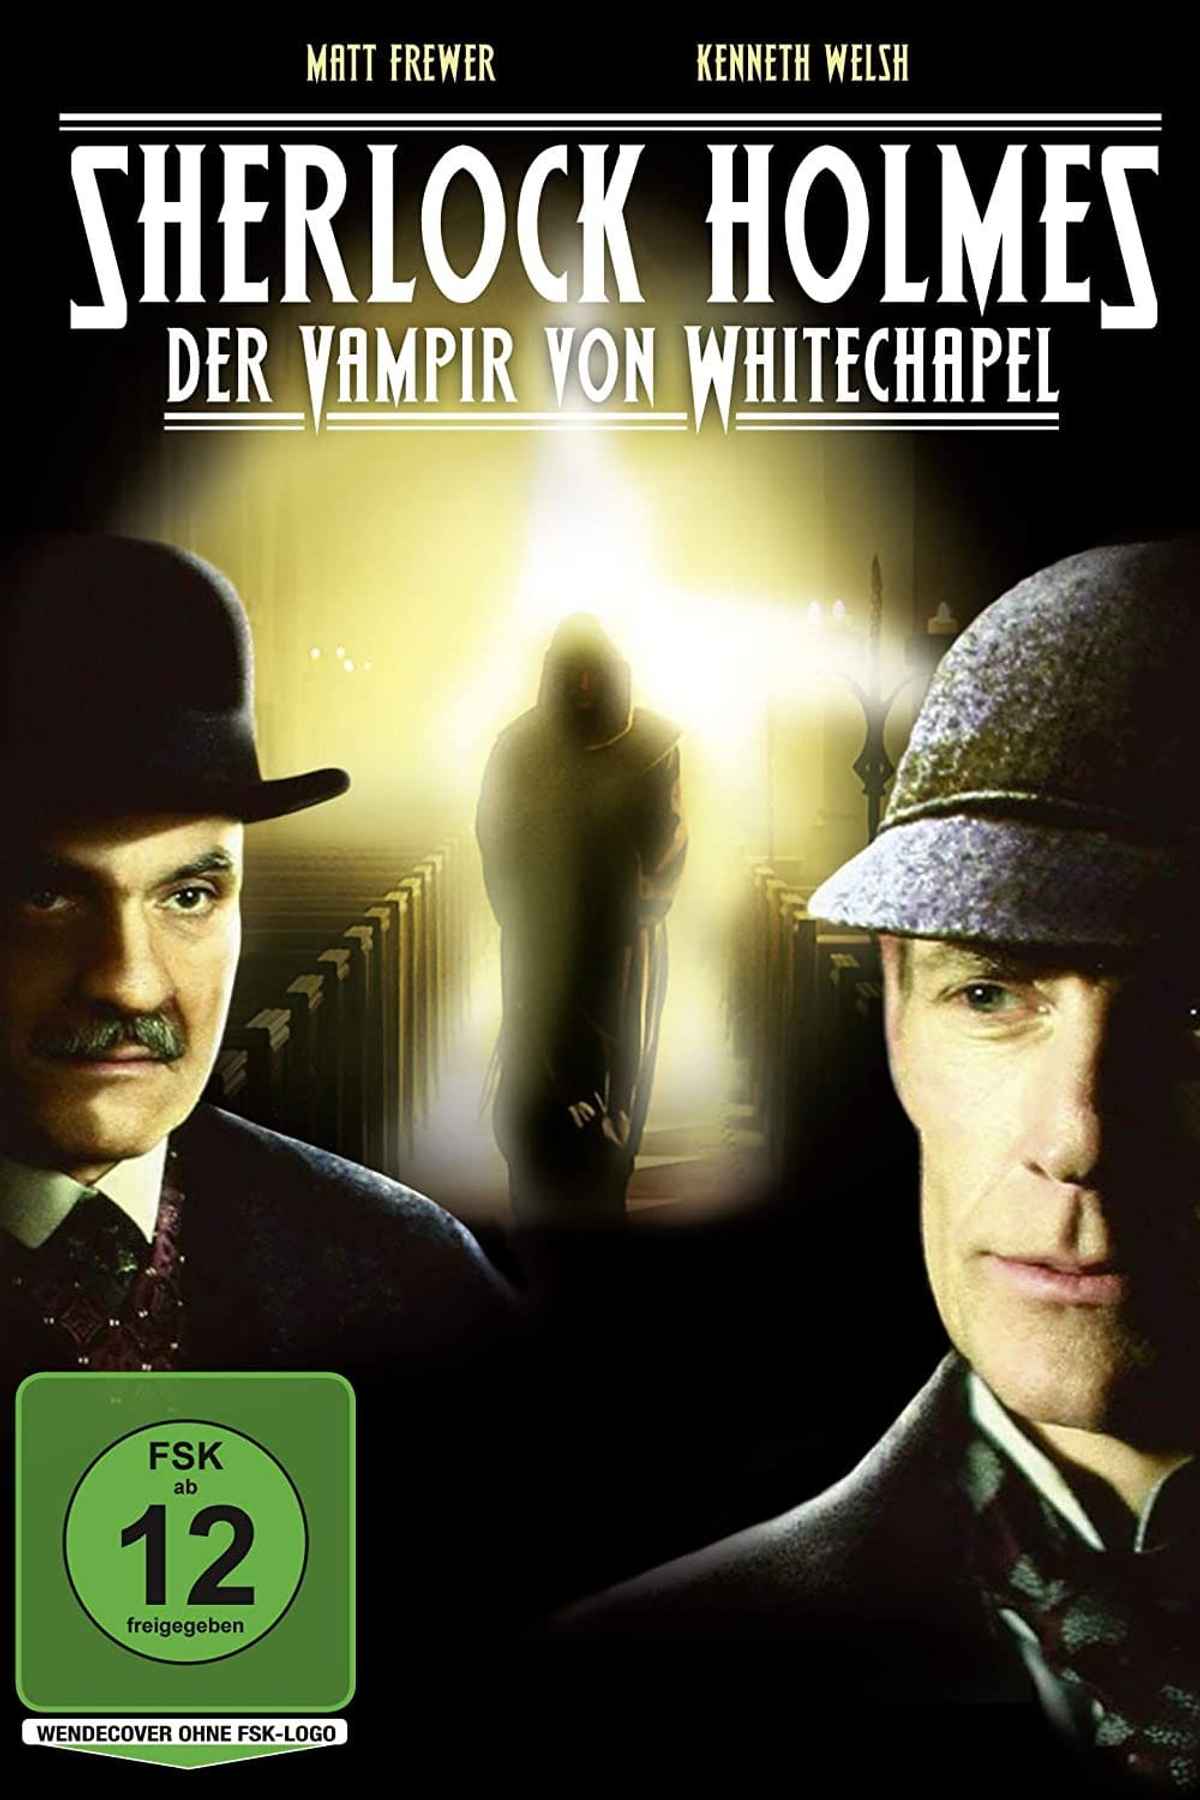 The Case of the Whitechapel Vampire